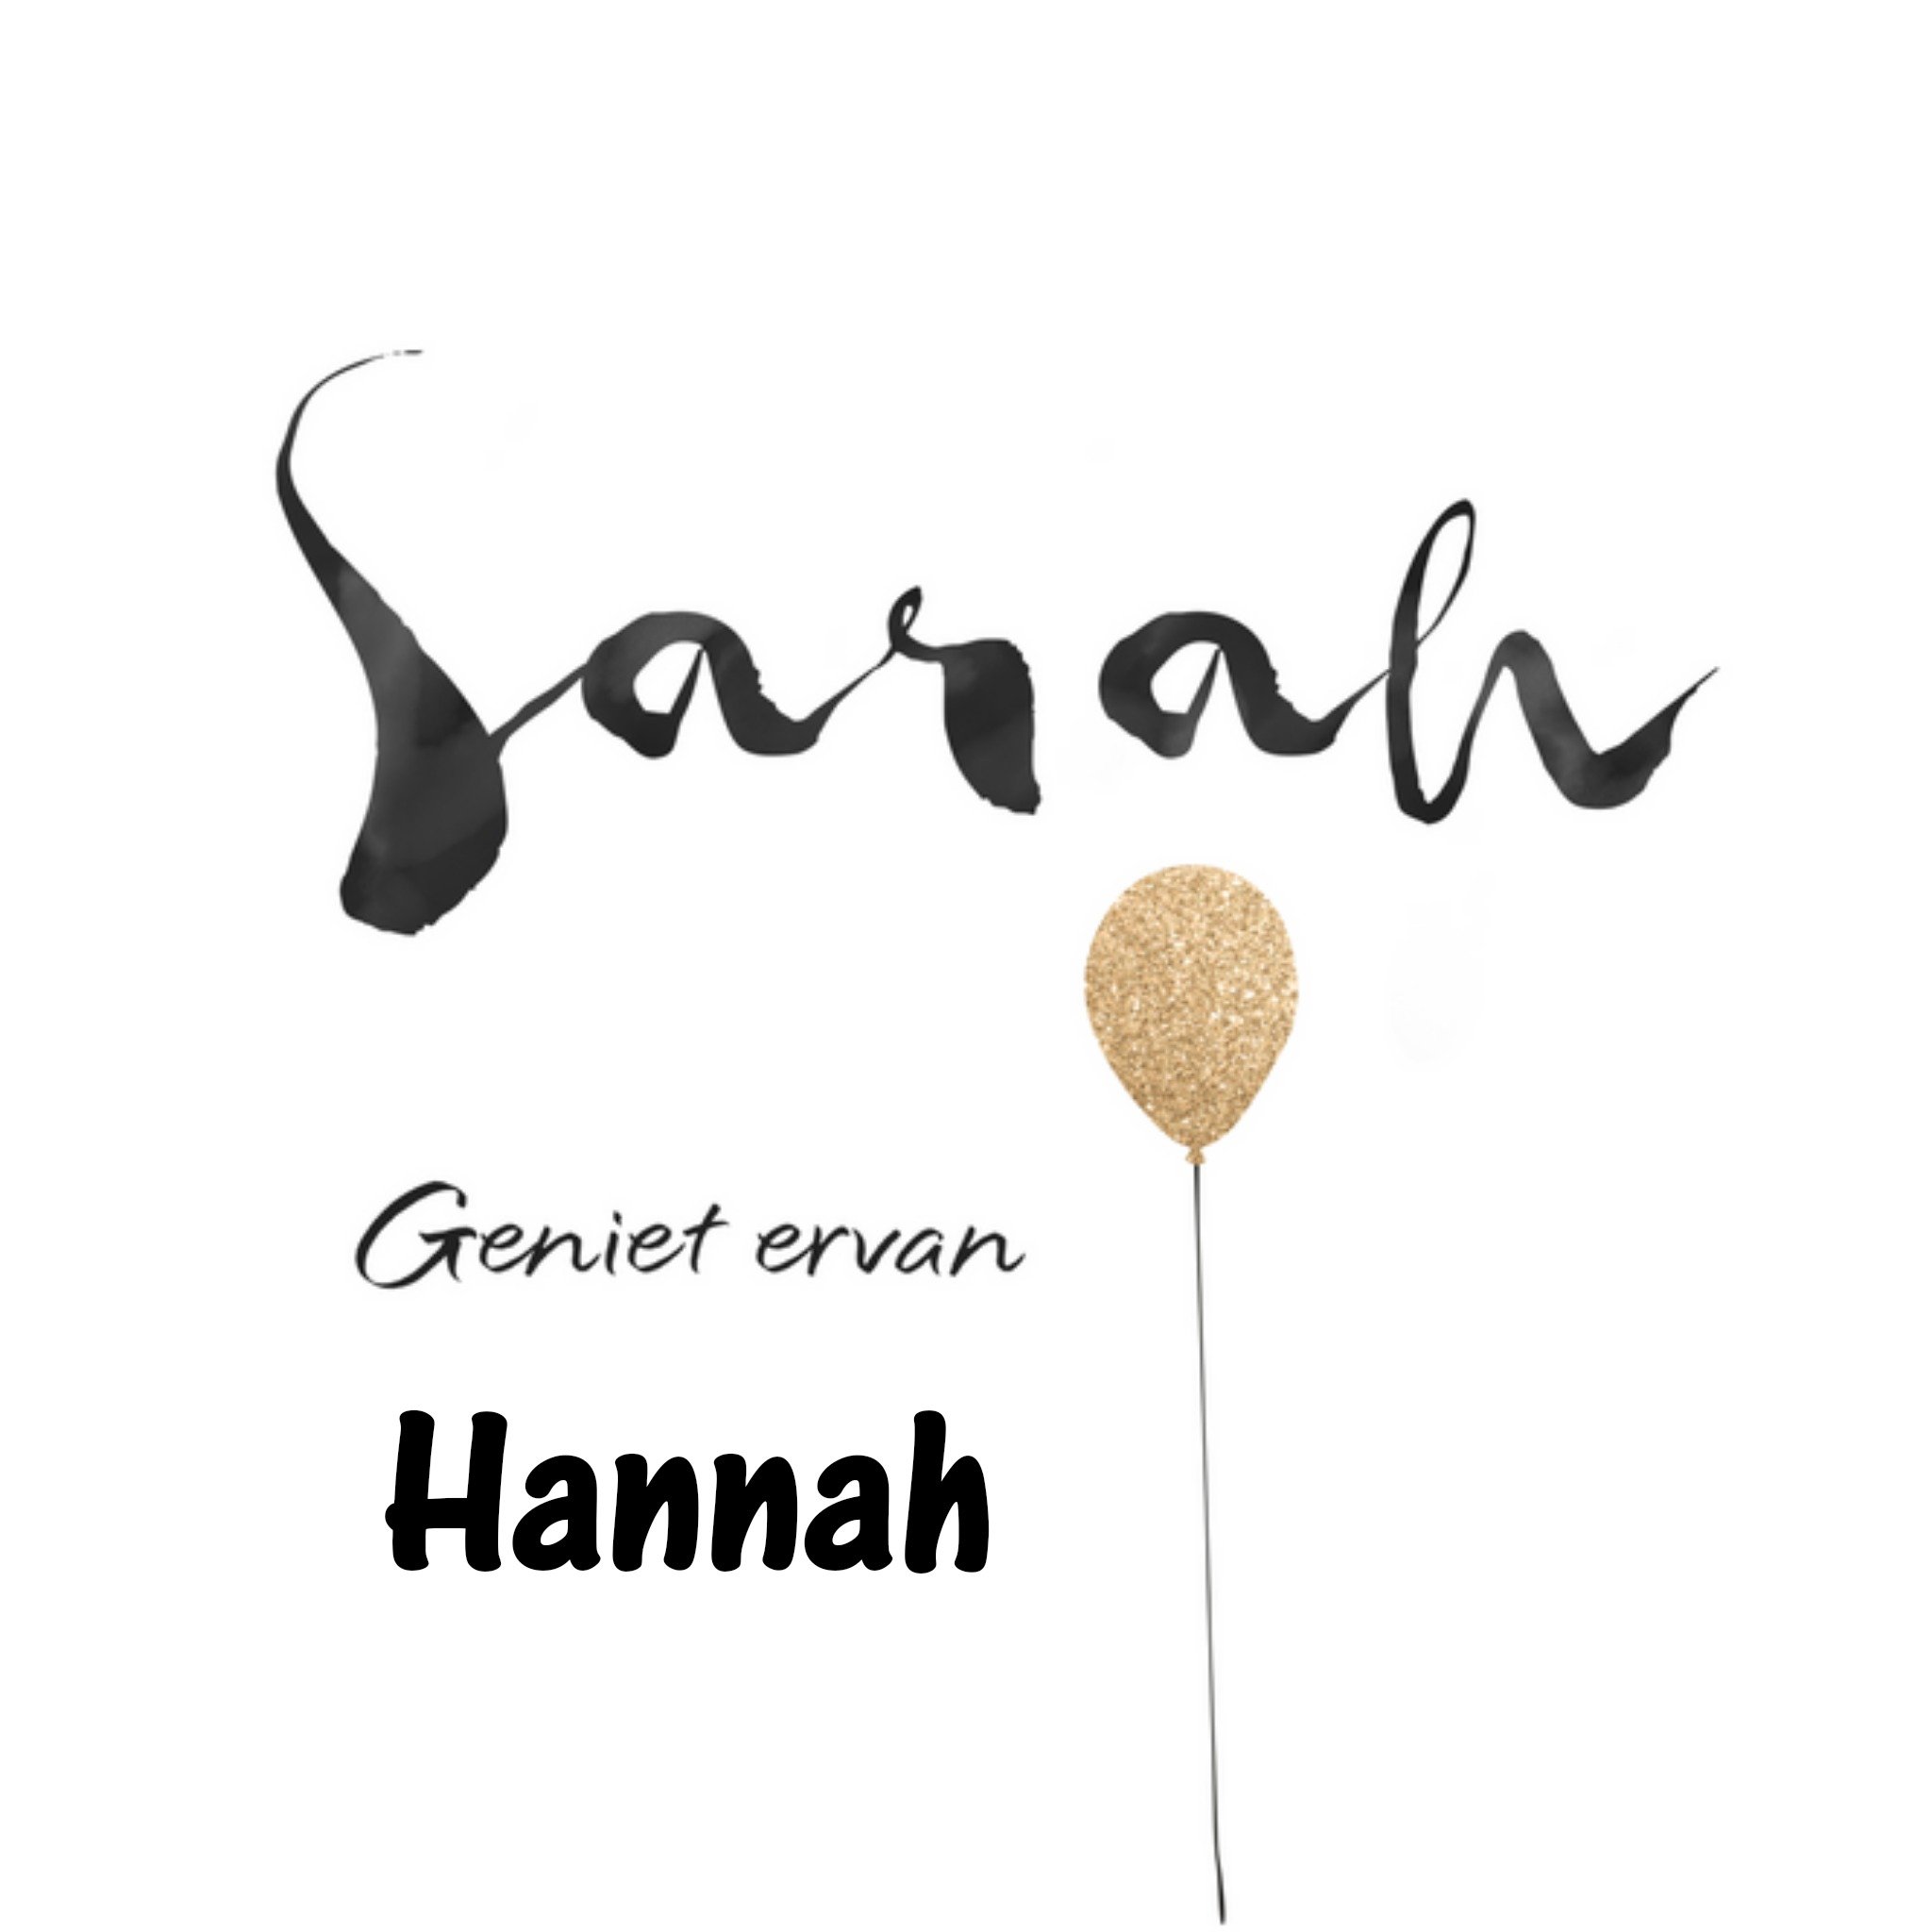 UK Greetings - Verjaardag - Sarah